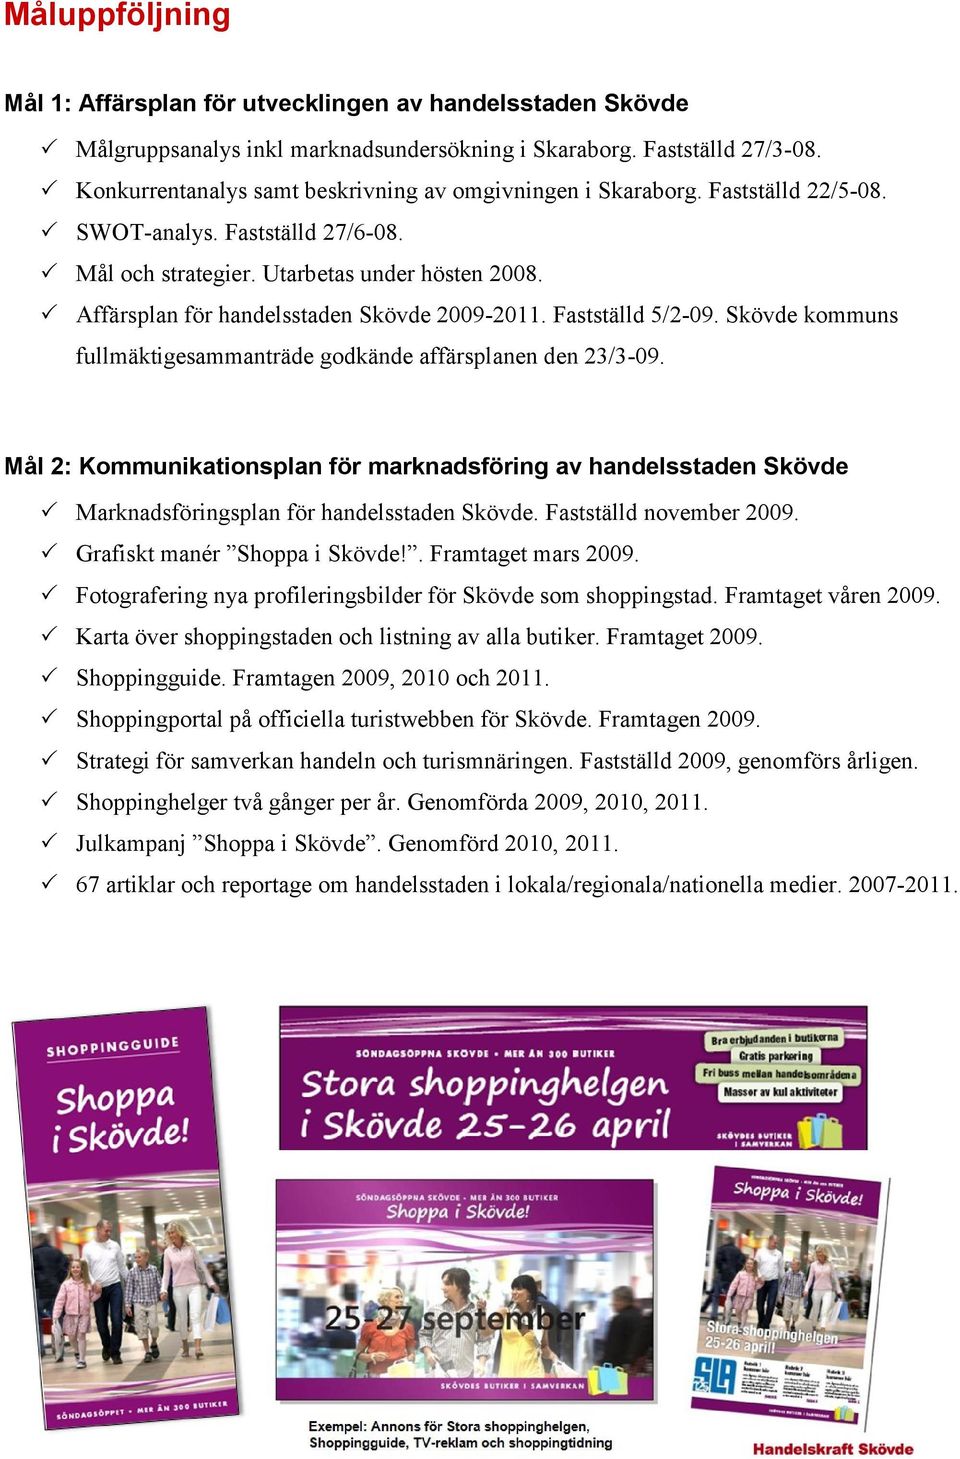 Affärsplan för handelsstaden Skövde 2009-2011. Fastställd 5/2-09. Skövde kommuns fullmäktigesammanträde godkände affärsplanen den 23/3-09.